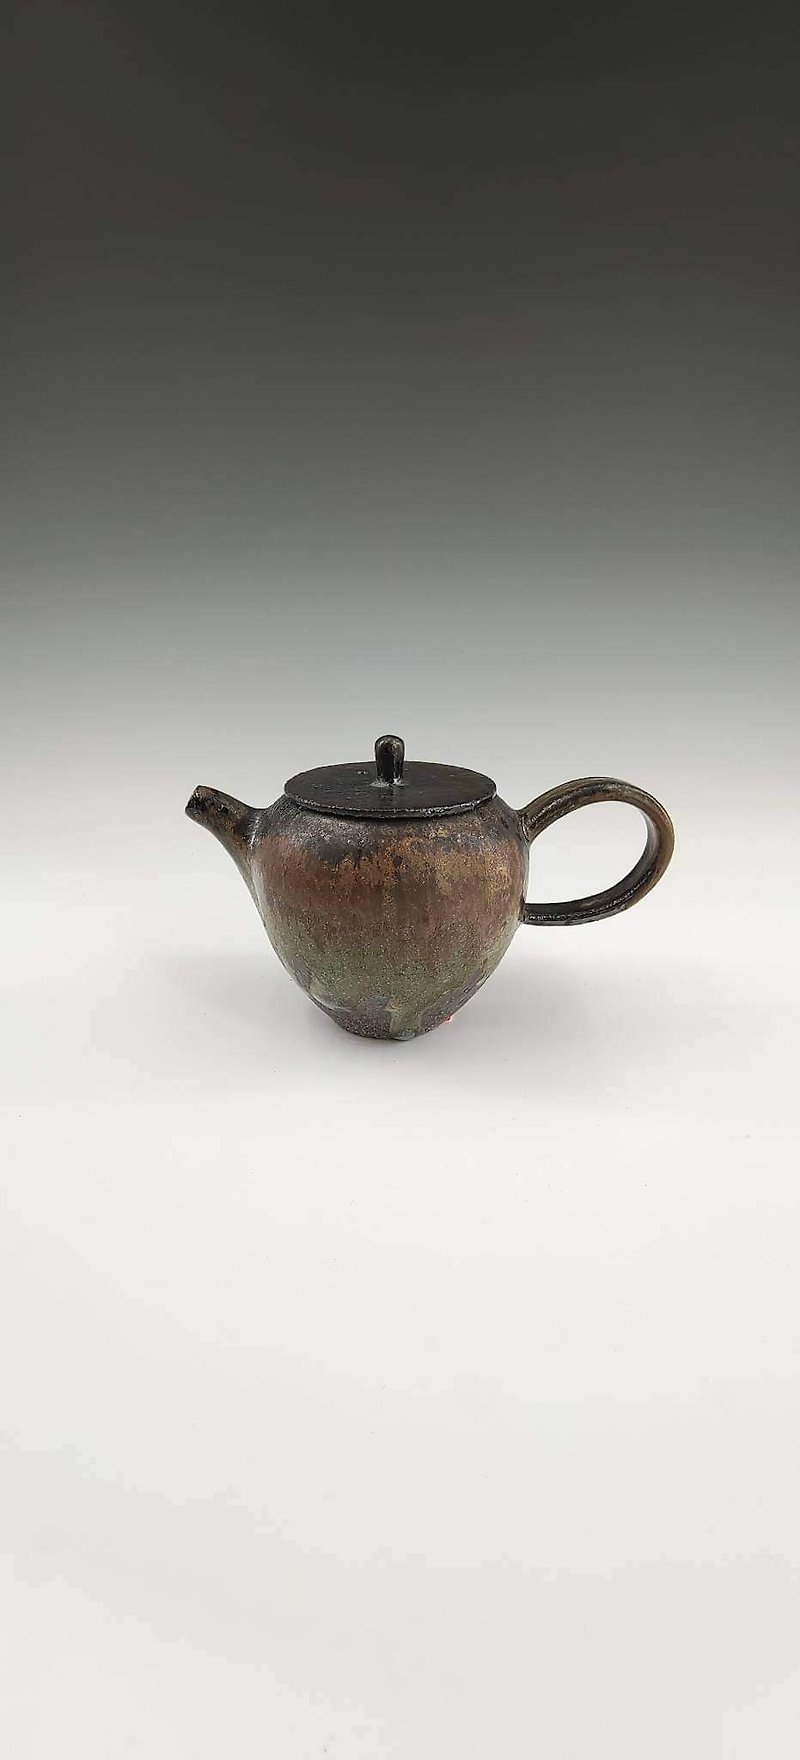 Firewood Jun glaze pot - Teapots & Teacups - Pottery 